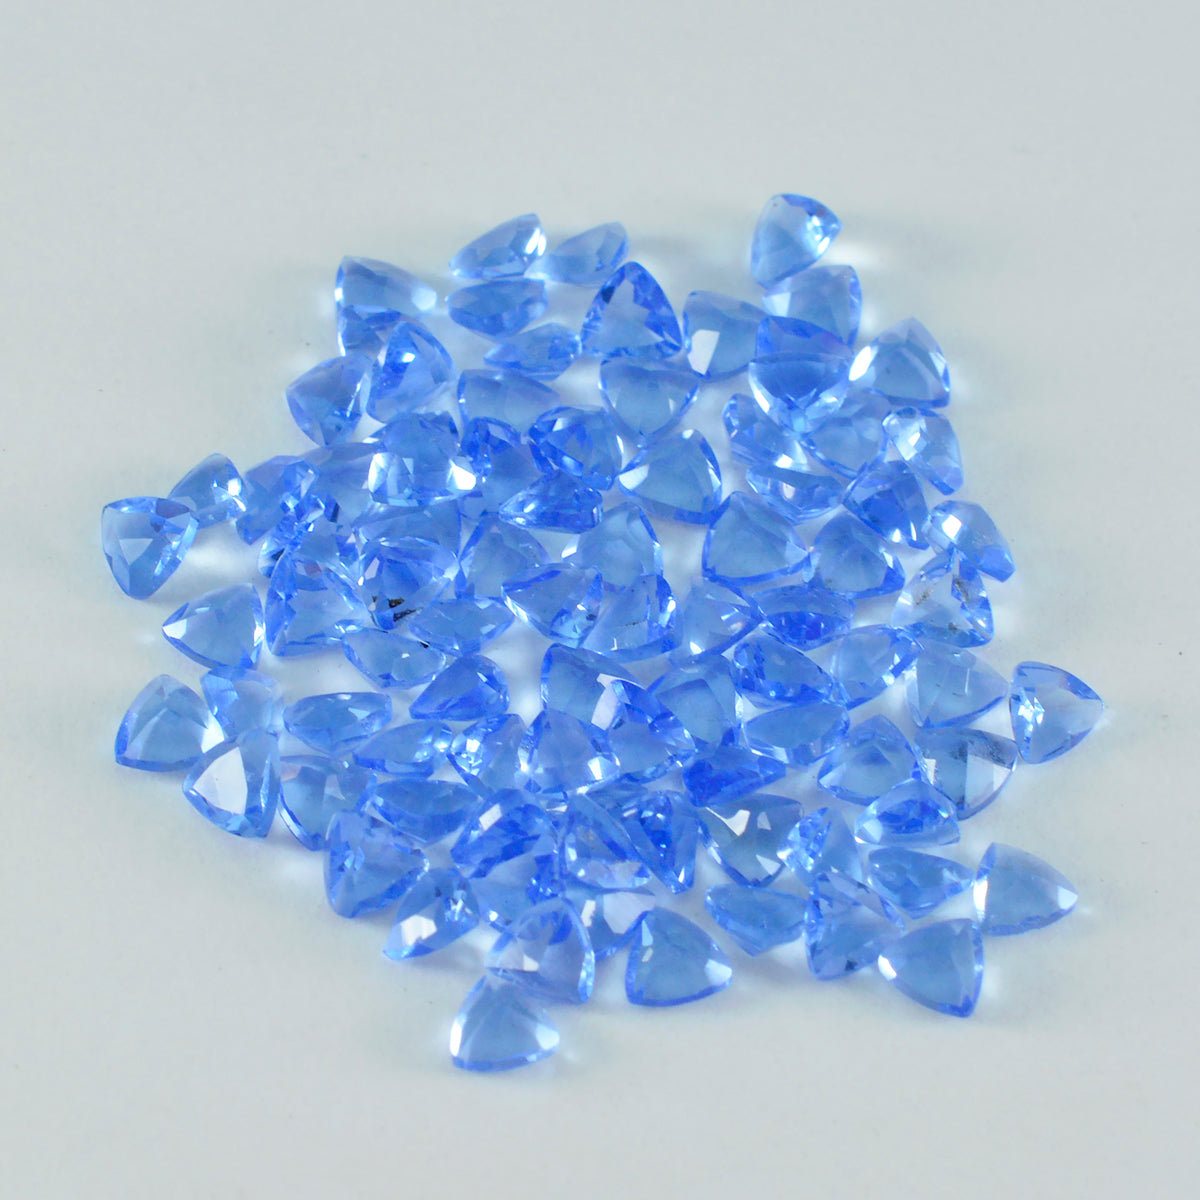 Riyogems 1 pieza de zafiro azul CZ facetado 4x4 mm forma de trillón piedra preciosa de calidad hermosa